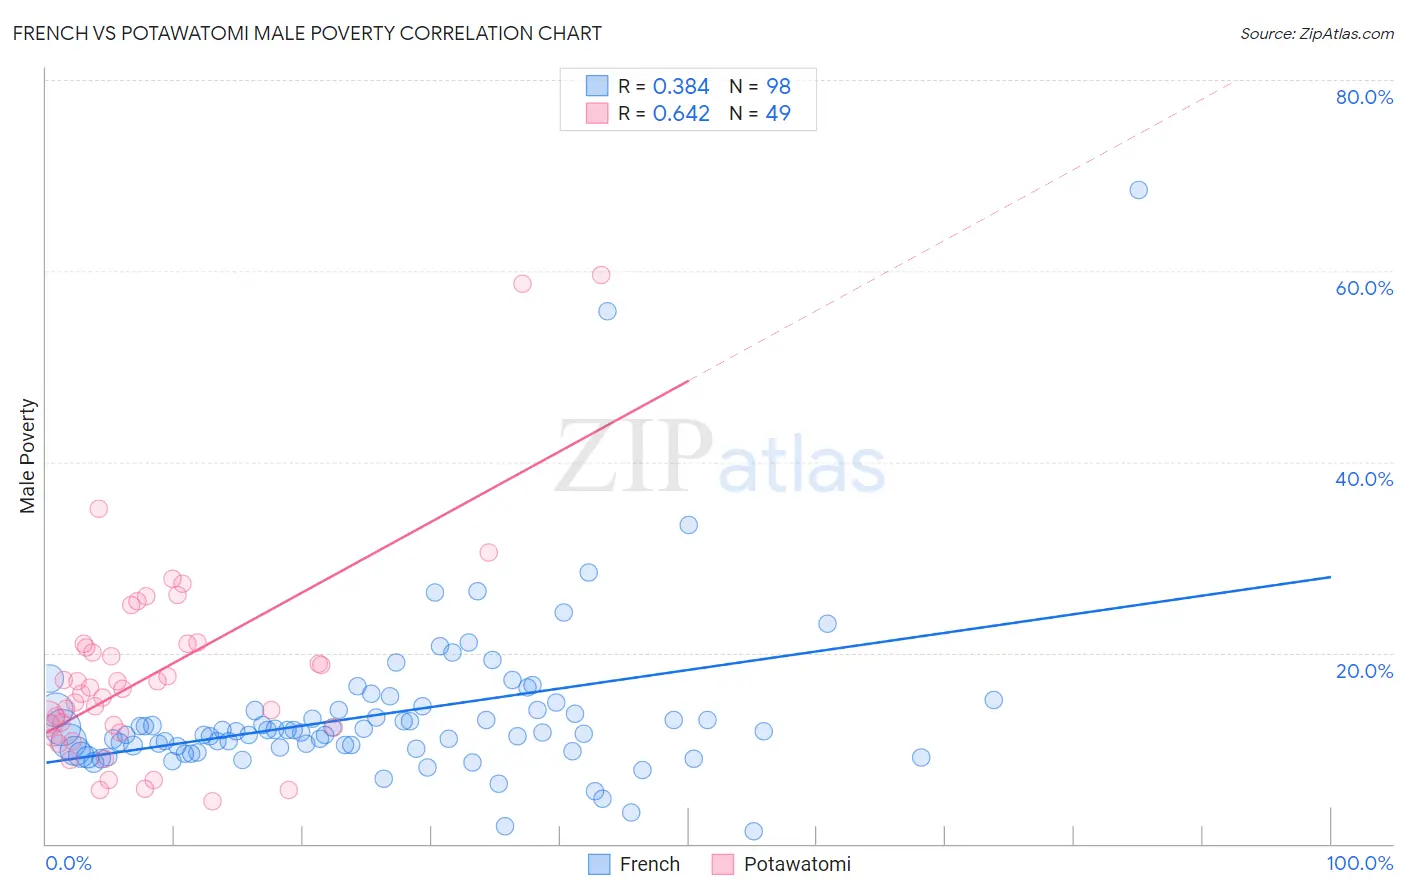 French vs Potawatomi Male Poverty